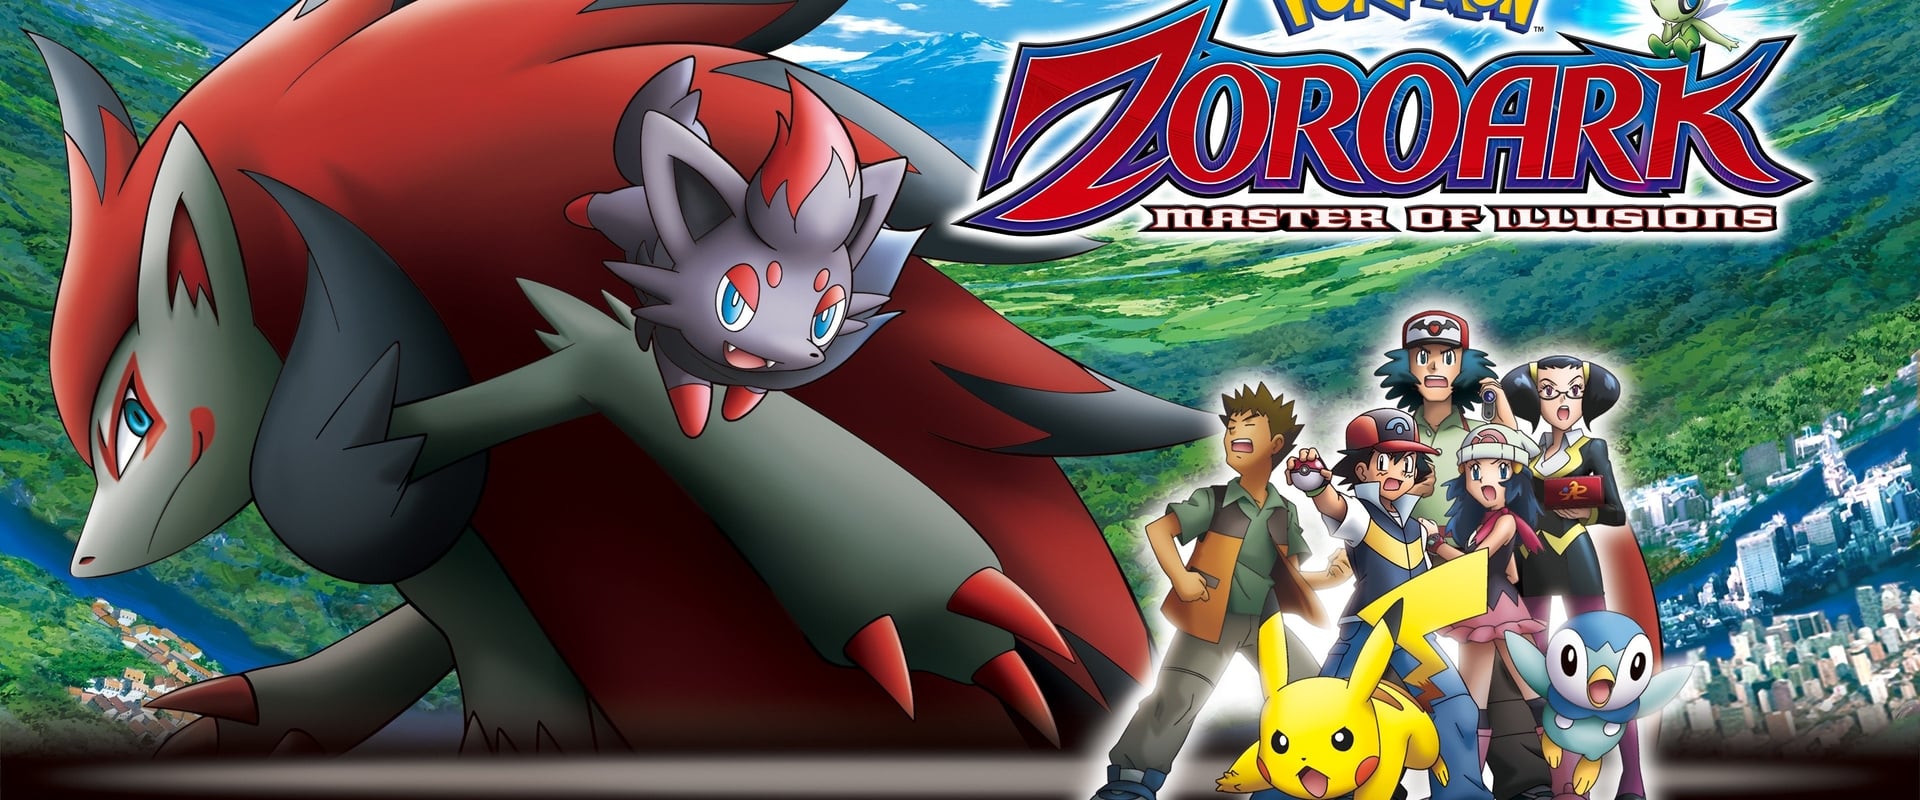 Pokémon - Il re delle illusioni Zoroark